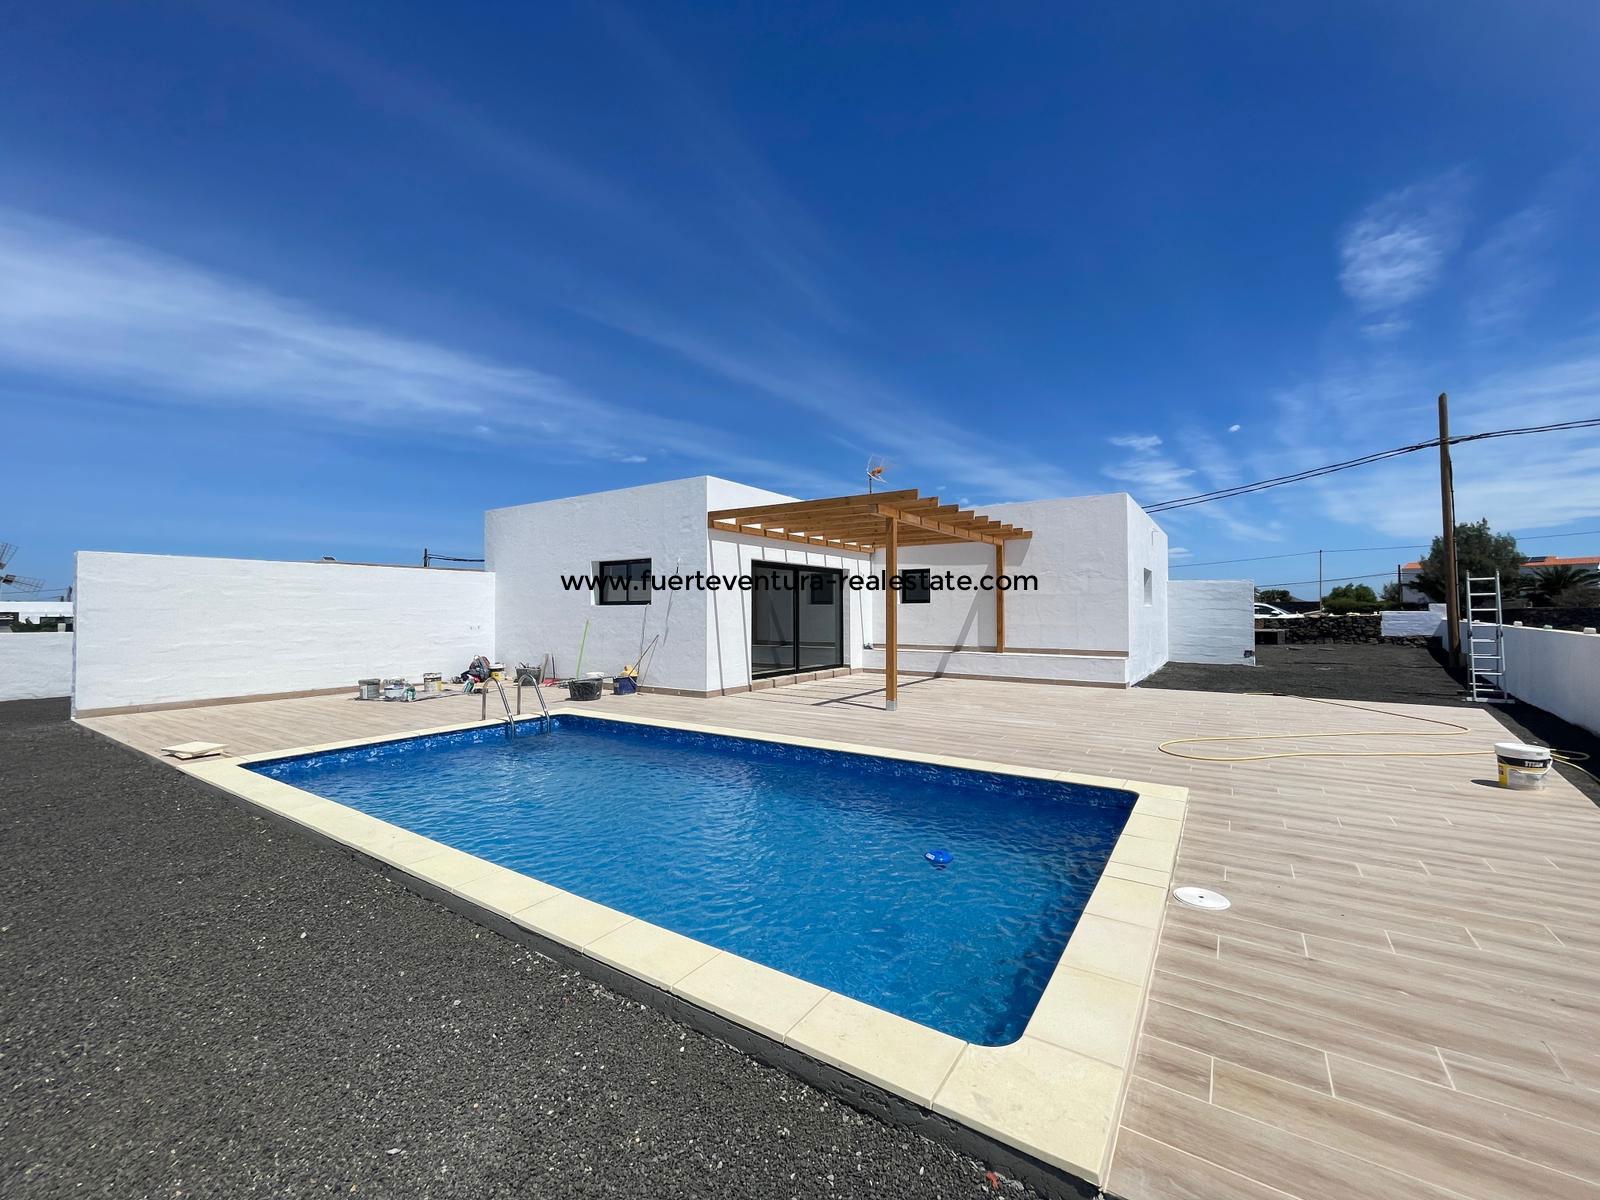  Una moderna villa di nuova costruzione con piscina è in vendita a Lajares